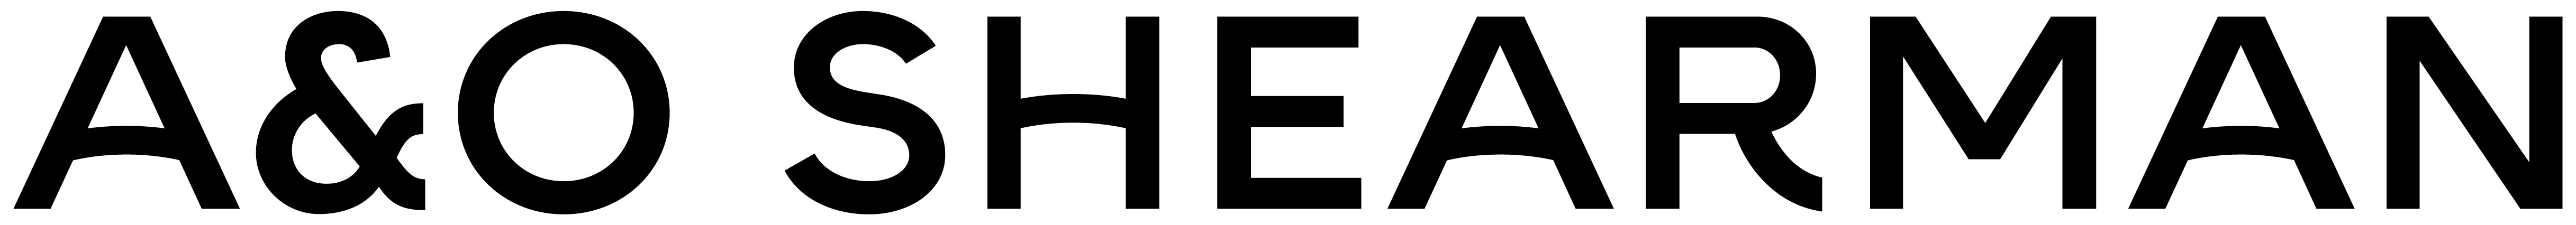 A&O SHEARMAN (Belgium) logo